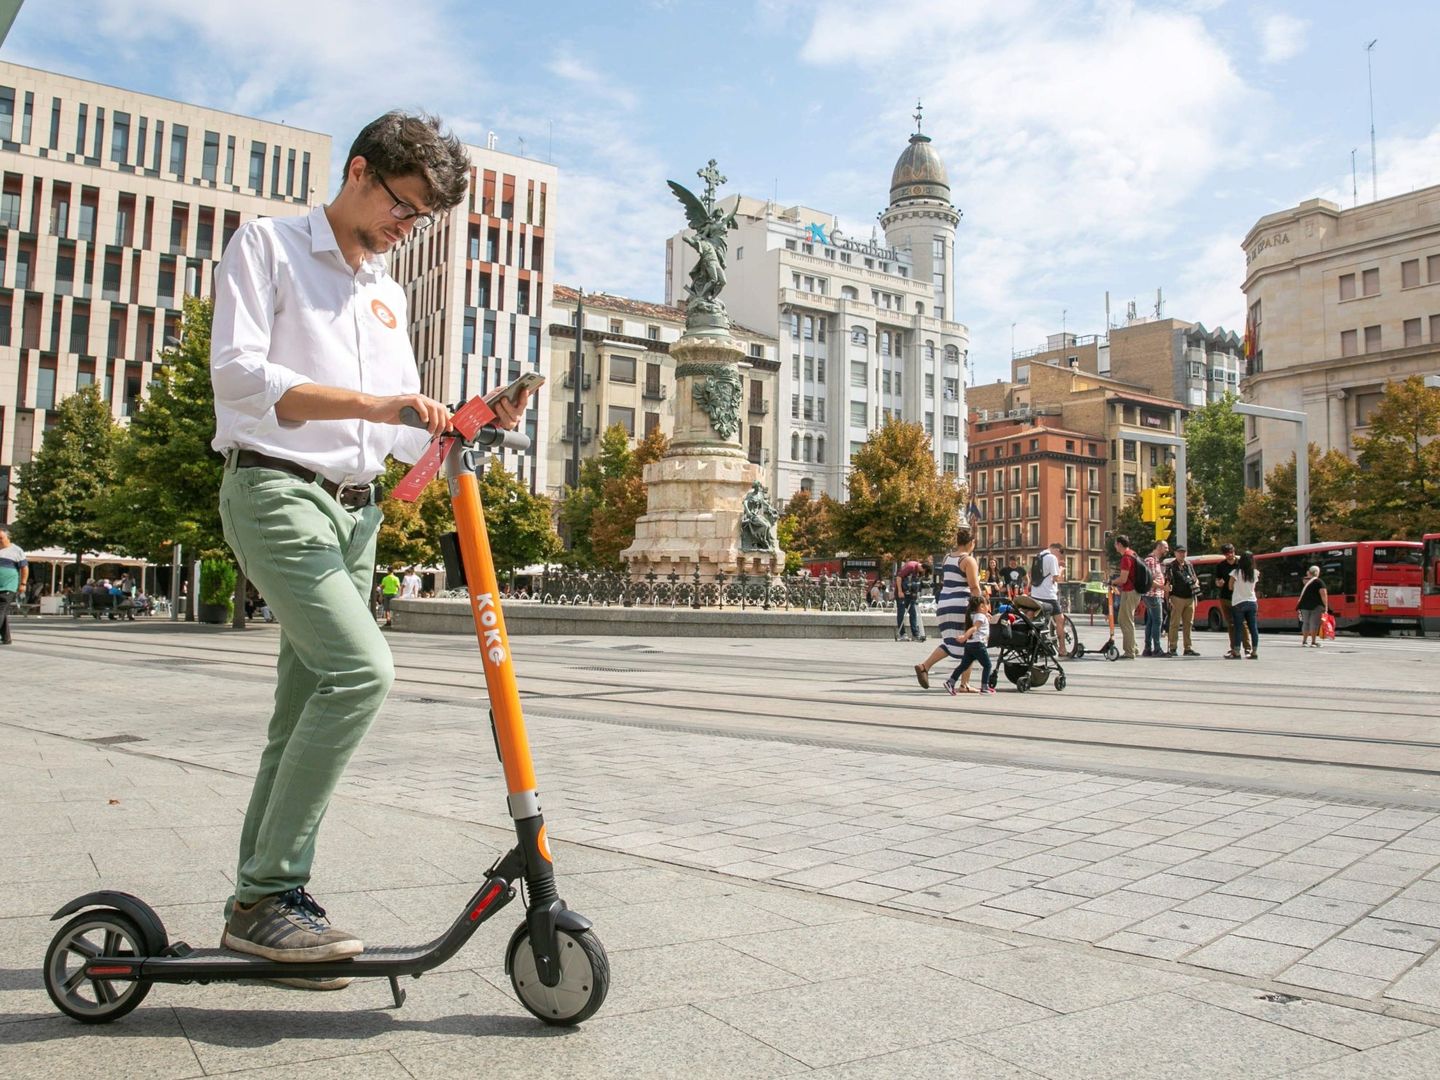 Un joven prueba un patinete eléctrico en la Plaza de España de Zaragoza. El patinete pertenece a la marca española Koko. (Foto: EFE)